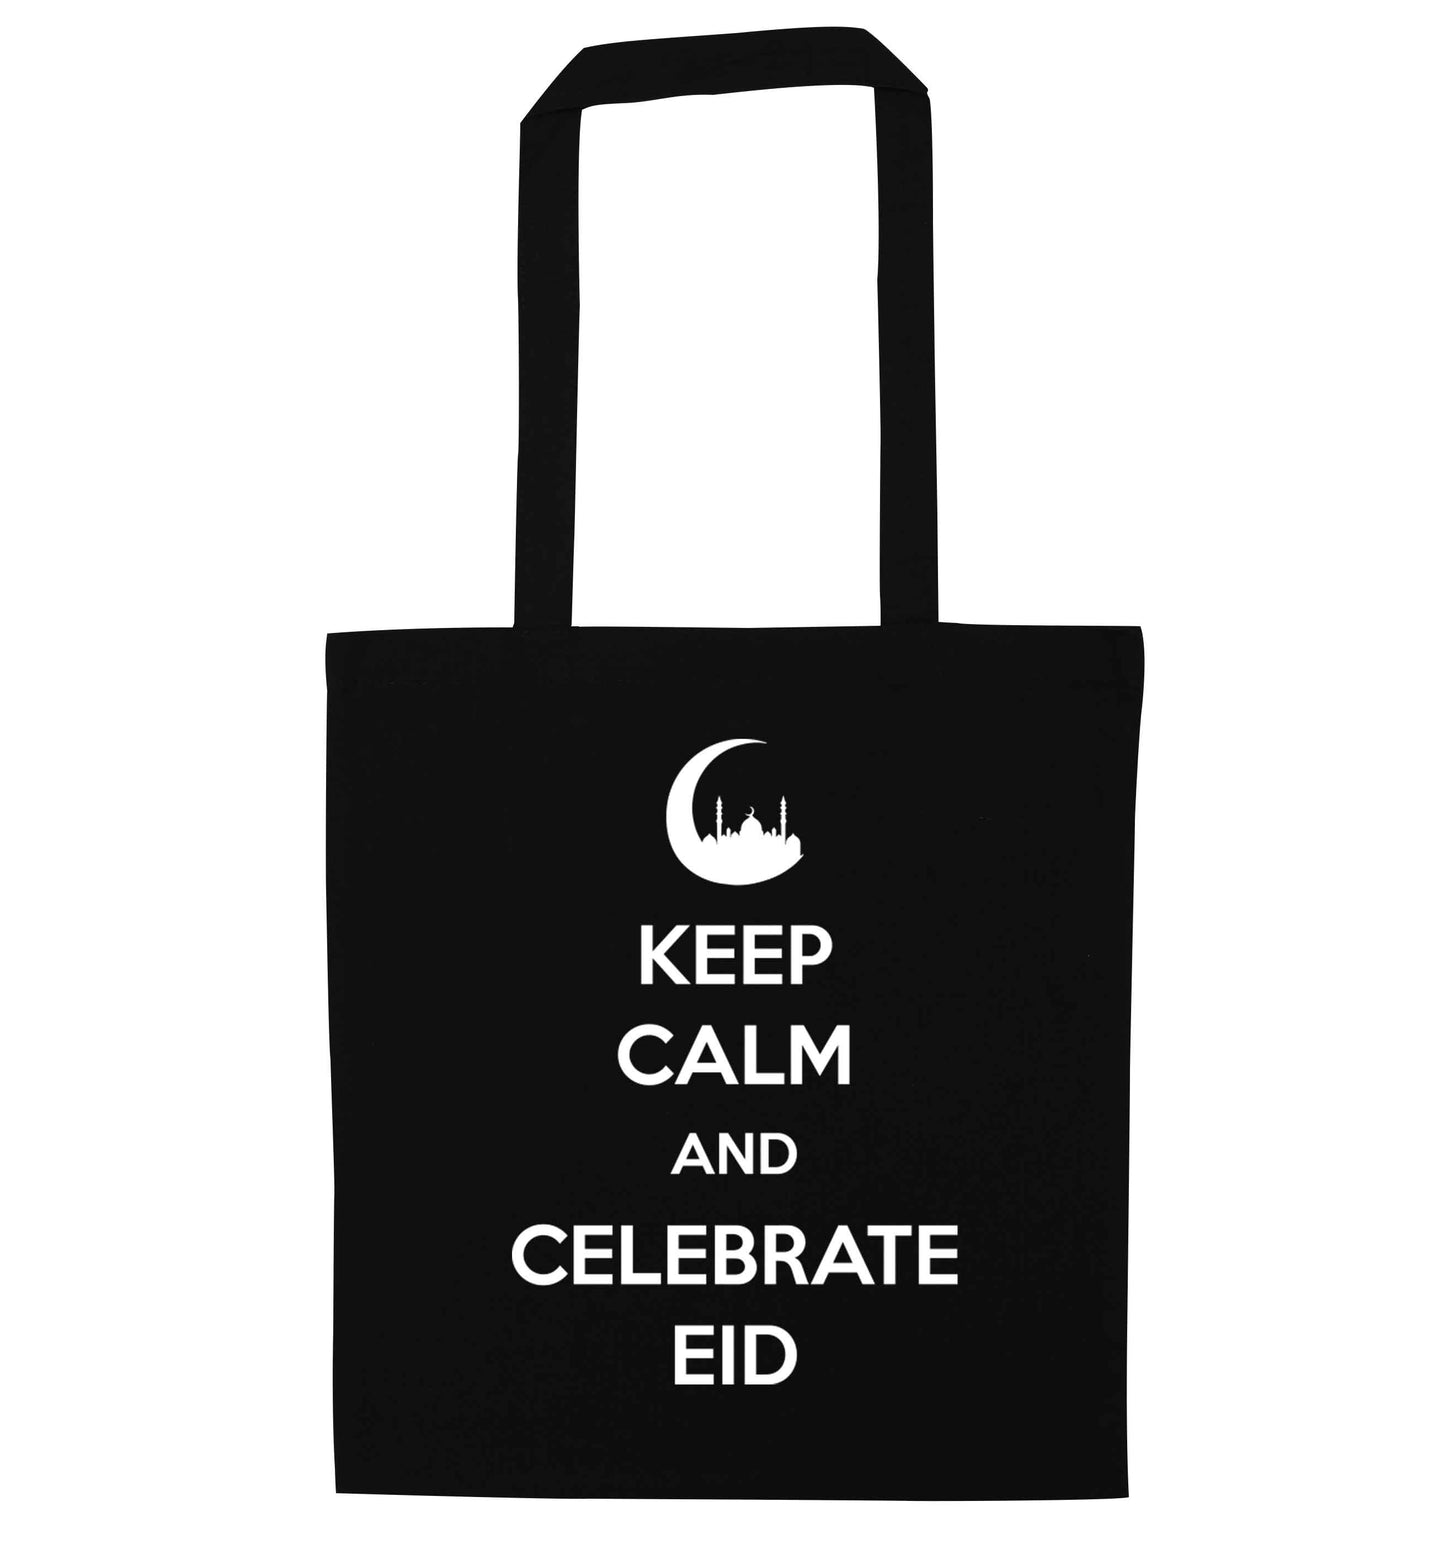 Keep calm and celebrate Eid black tote bag